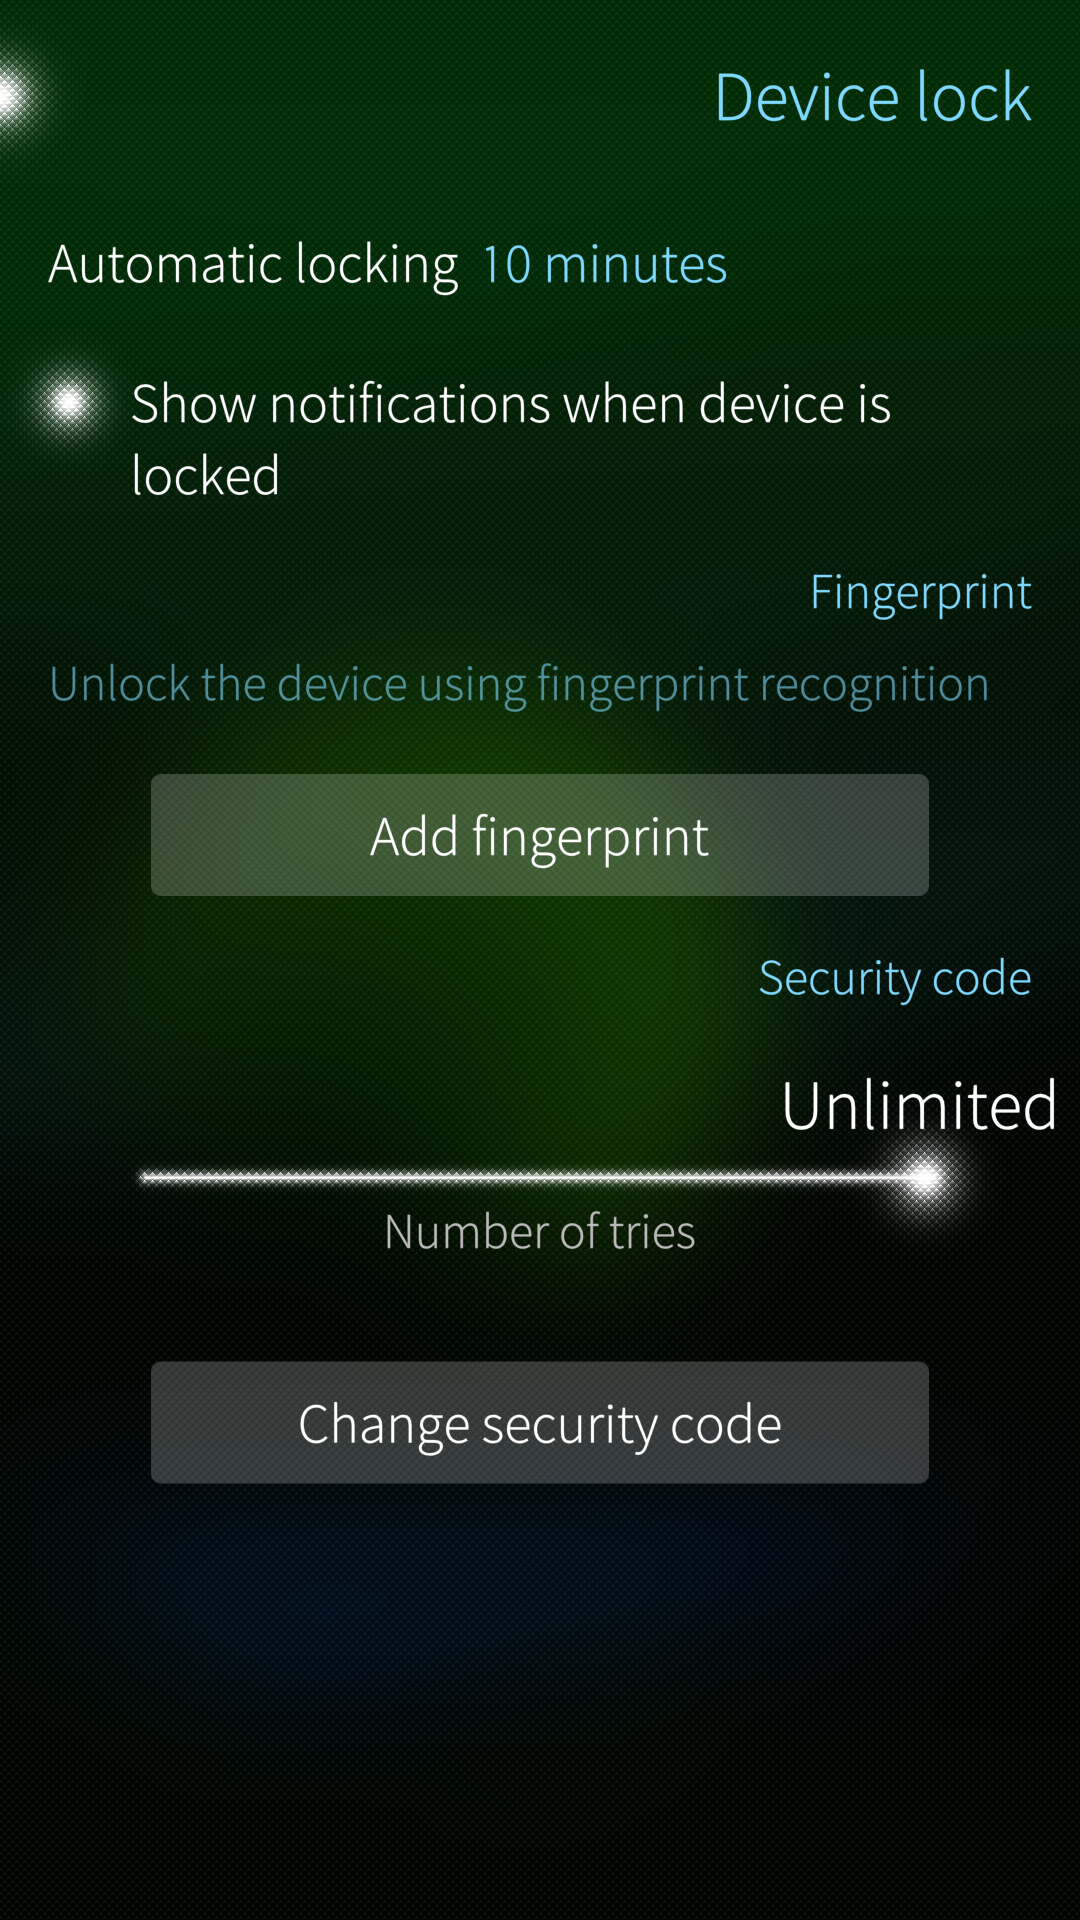 Device lock settings